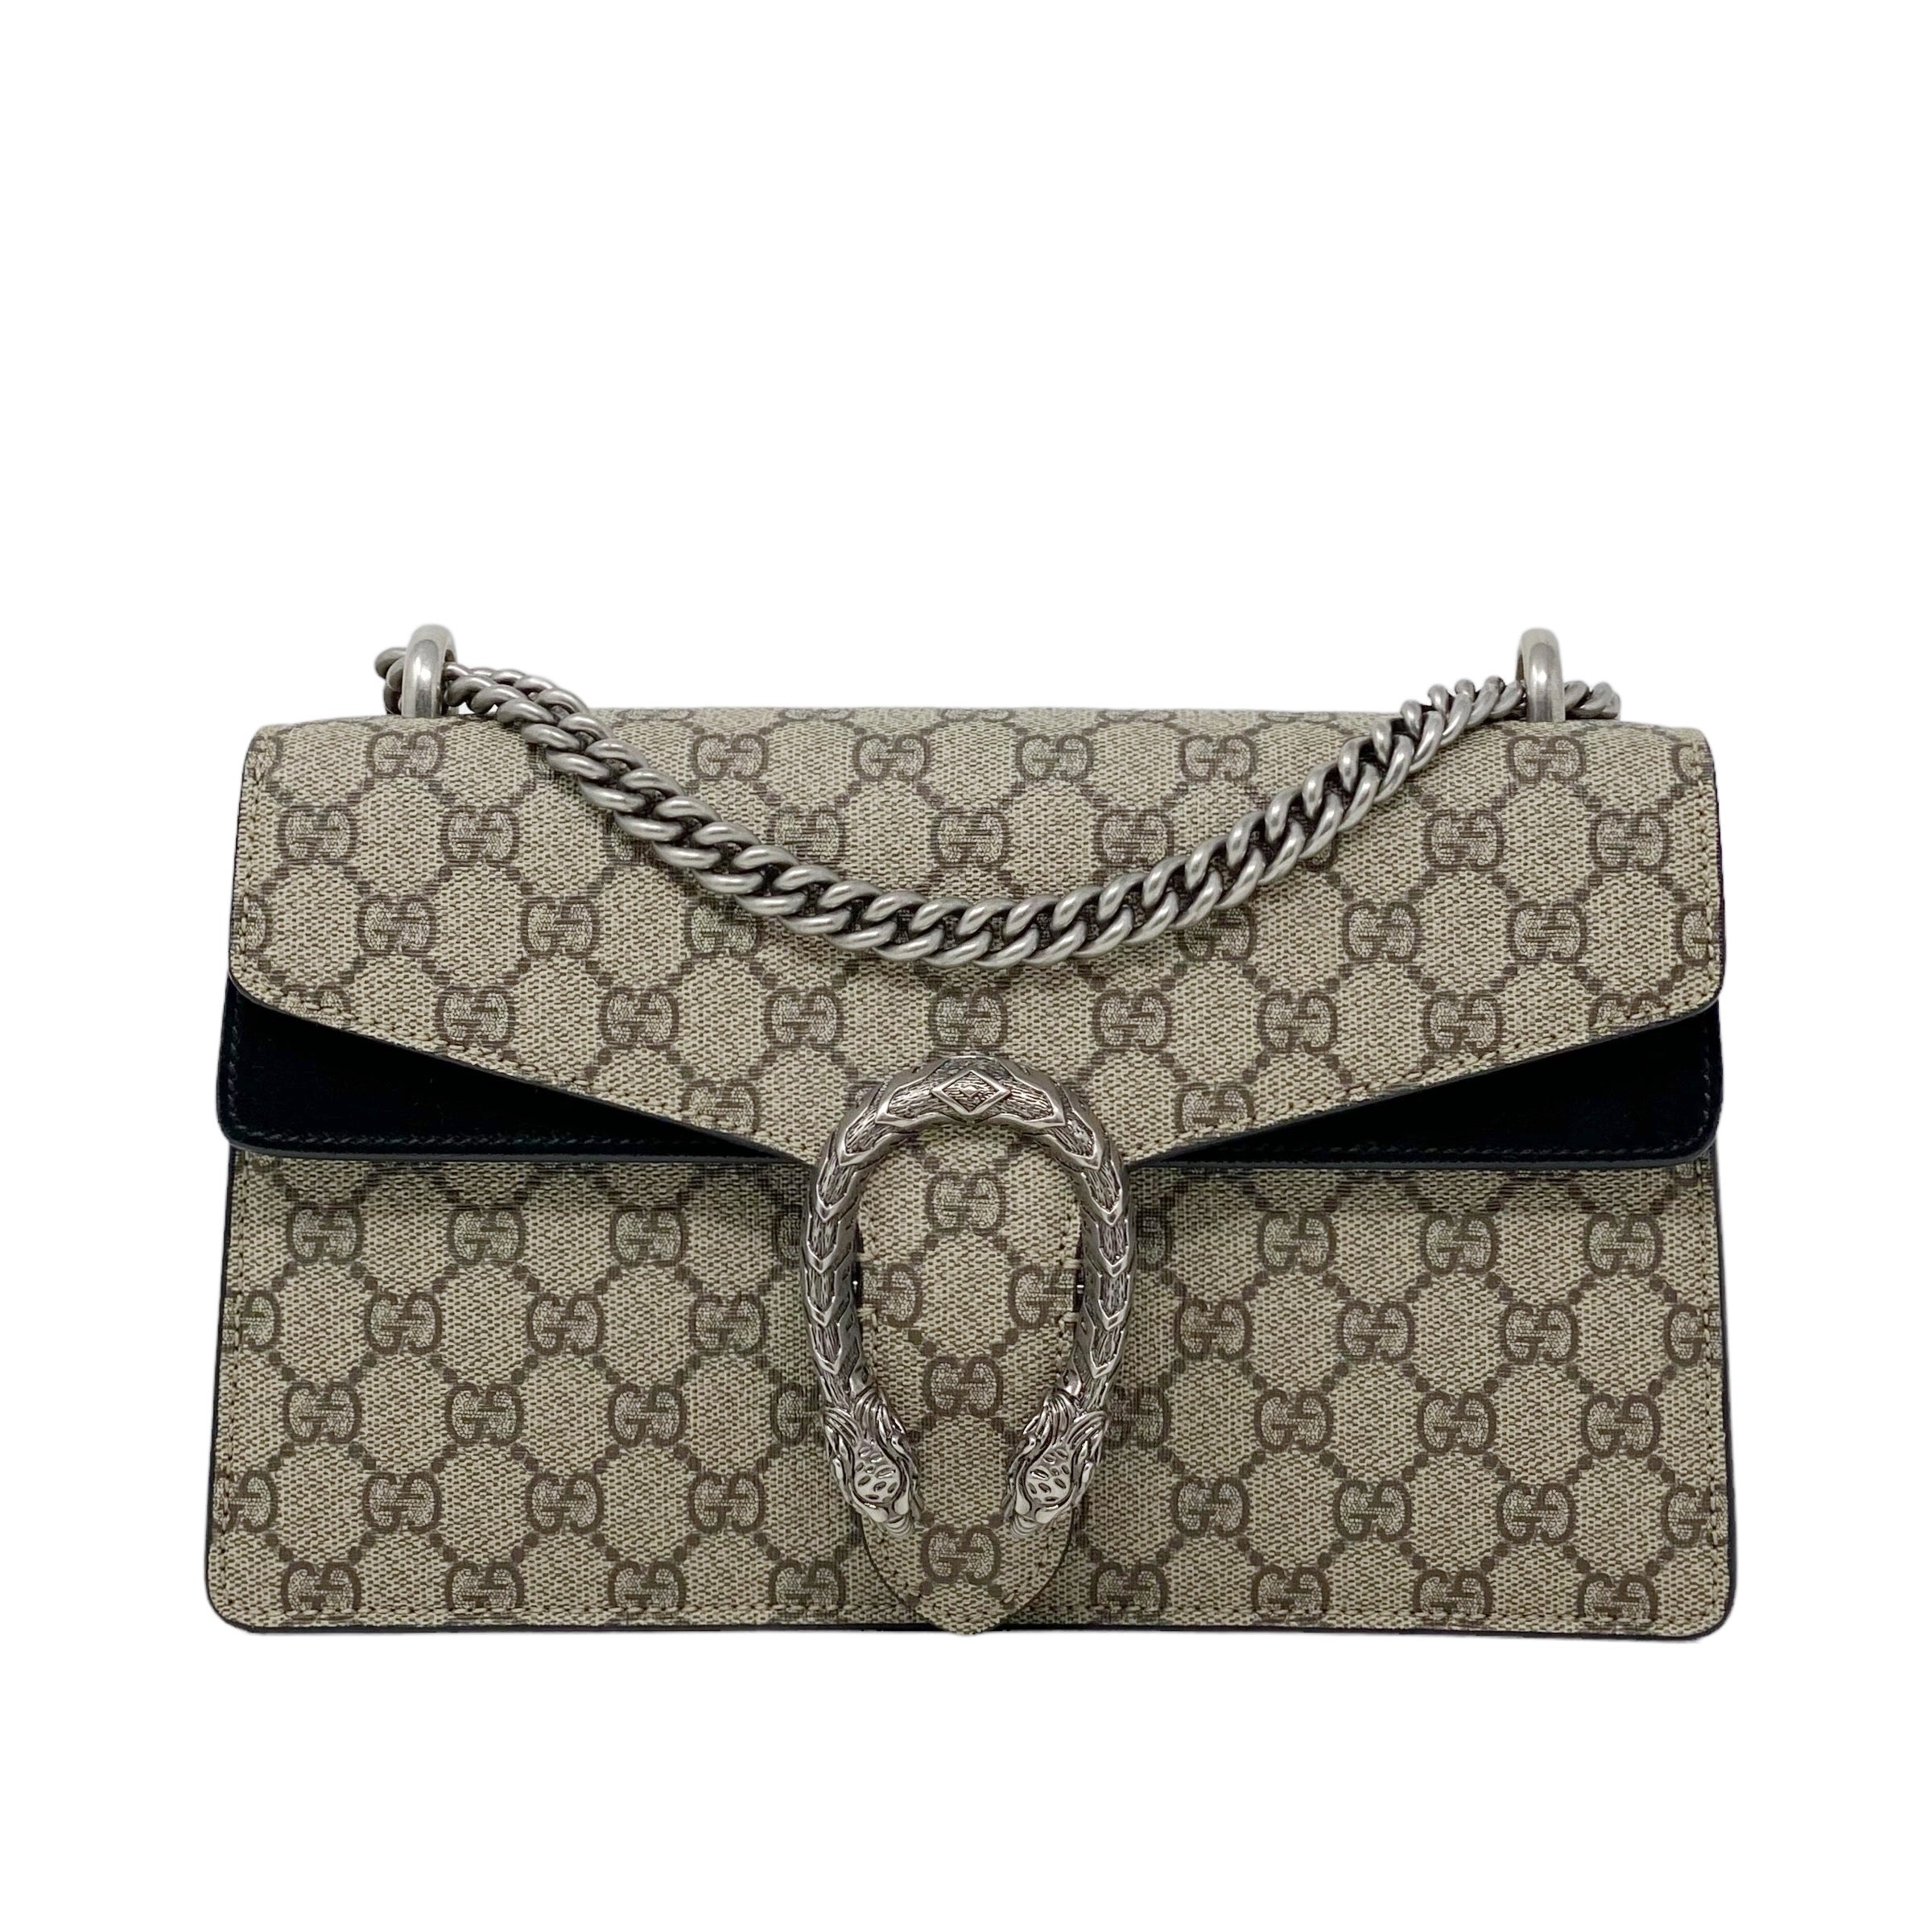 Gucci GG Supreme Small Dionysus Bag